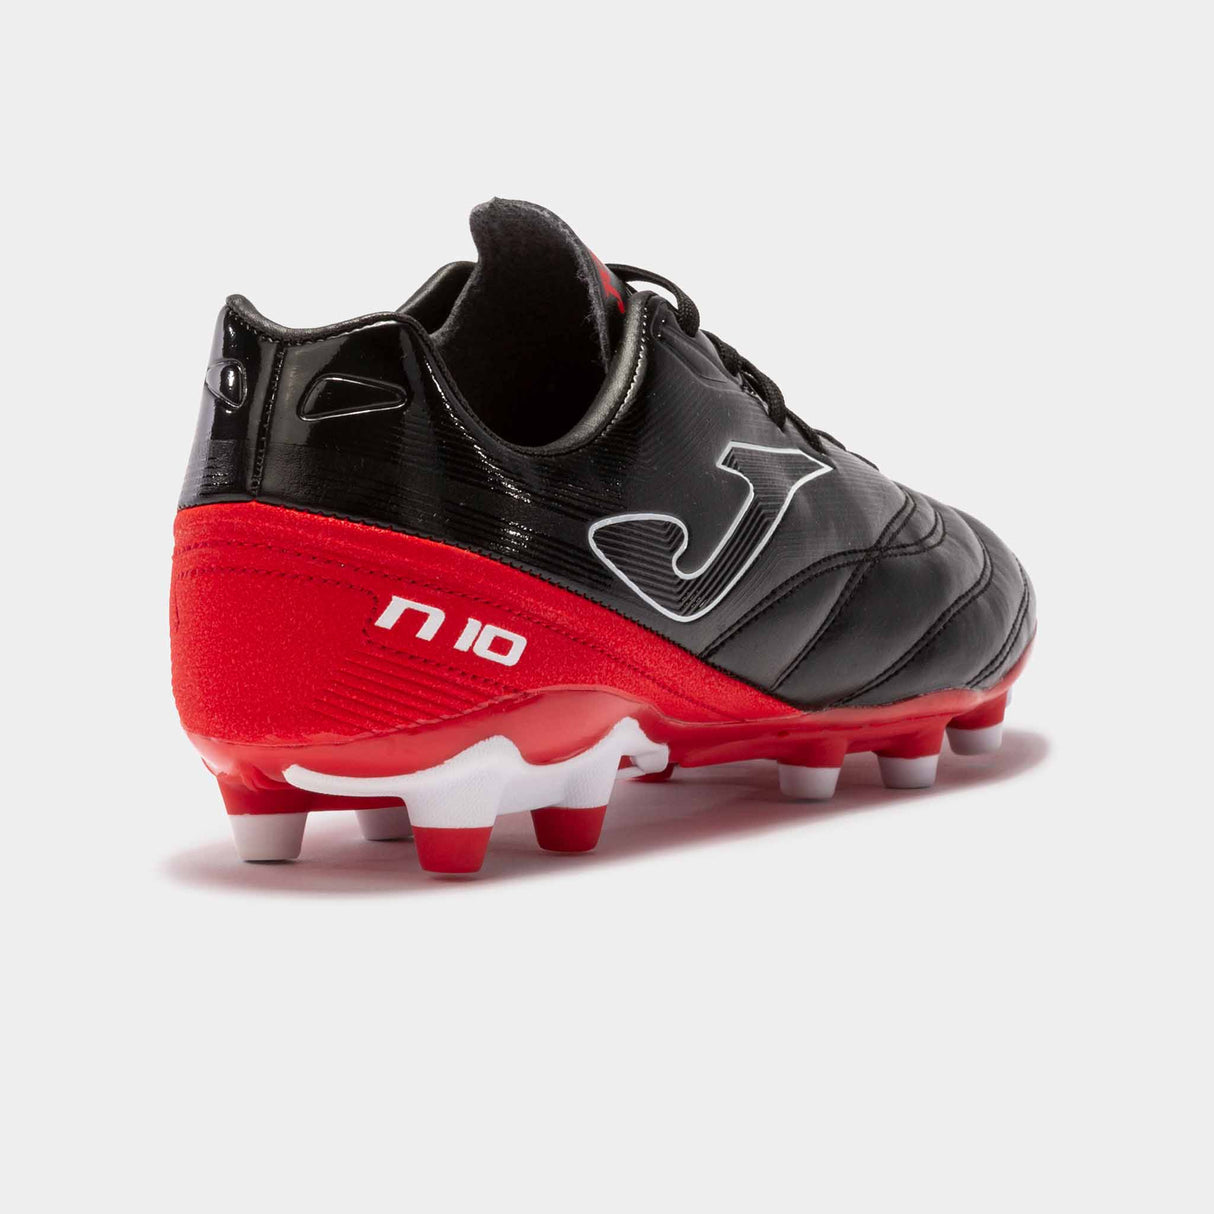 Joma Numero 10 chaussures de soccer à crampons adulte - Noir/Rouge talon